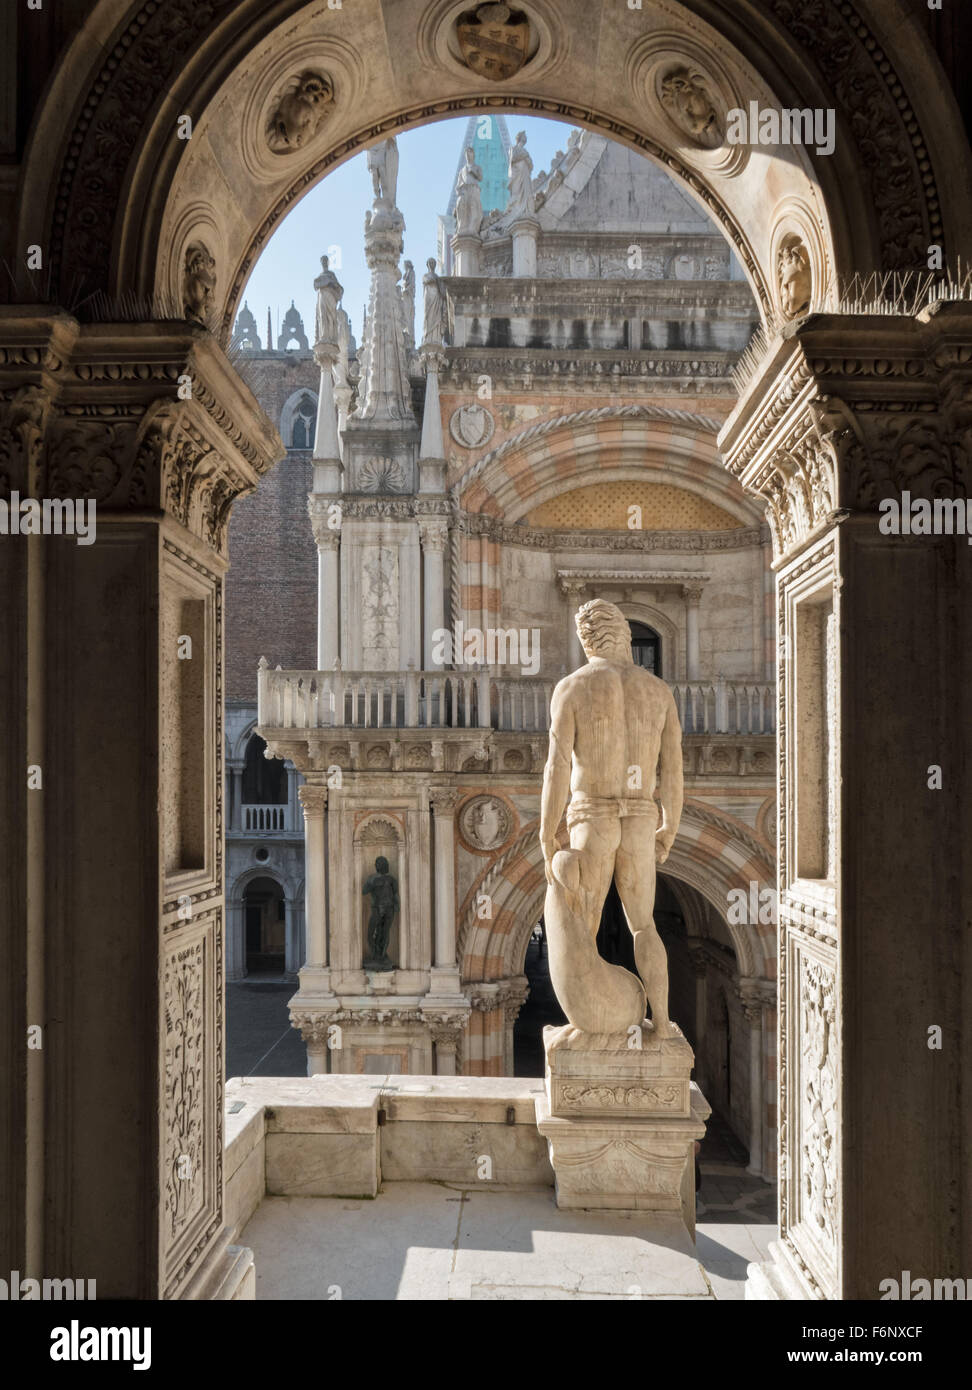 Dettagli dello scalone nel cortile di Palazzo Ducale in piazza San Marco, San Marco, Venezia. Foto Stock